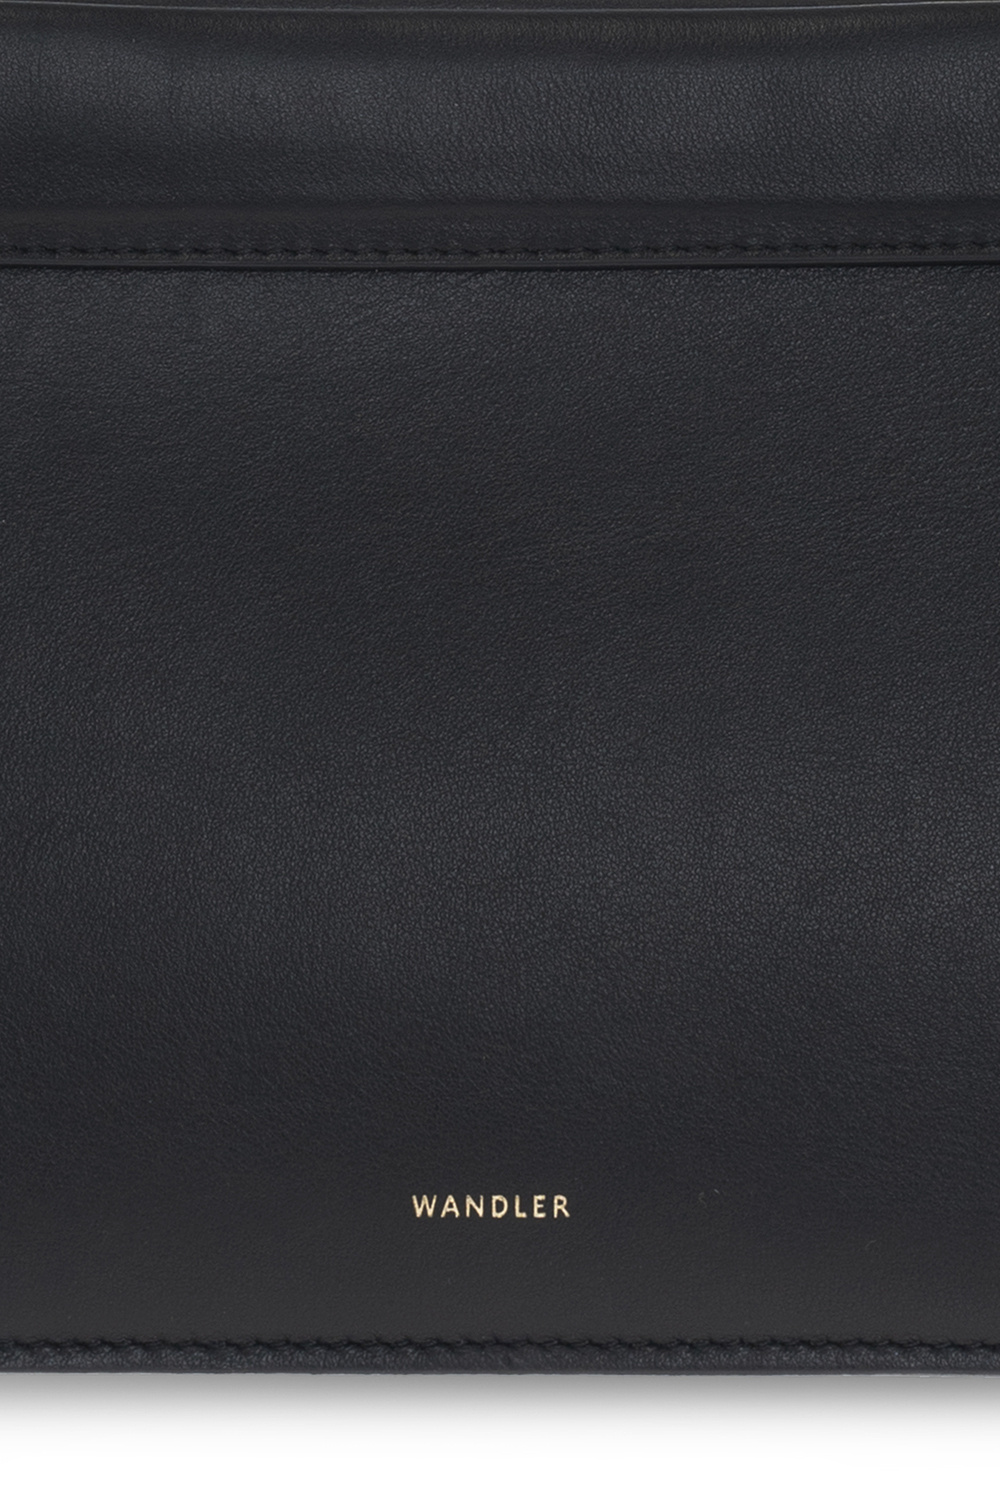 Wandler ‘Hannah’ shoulder bag